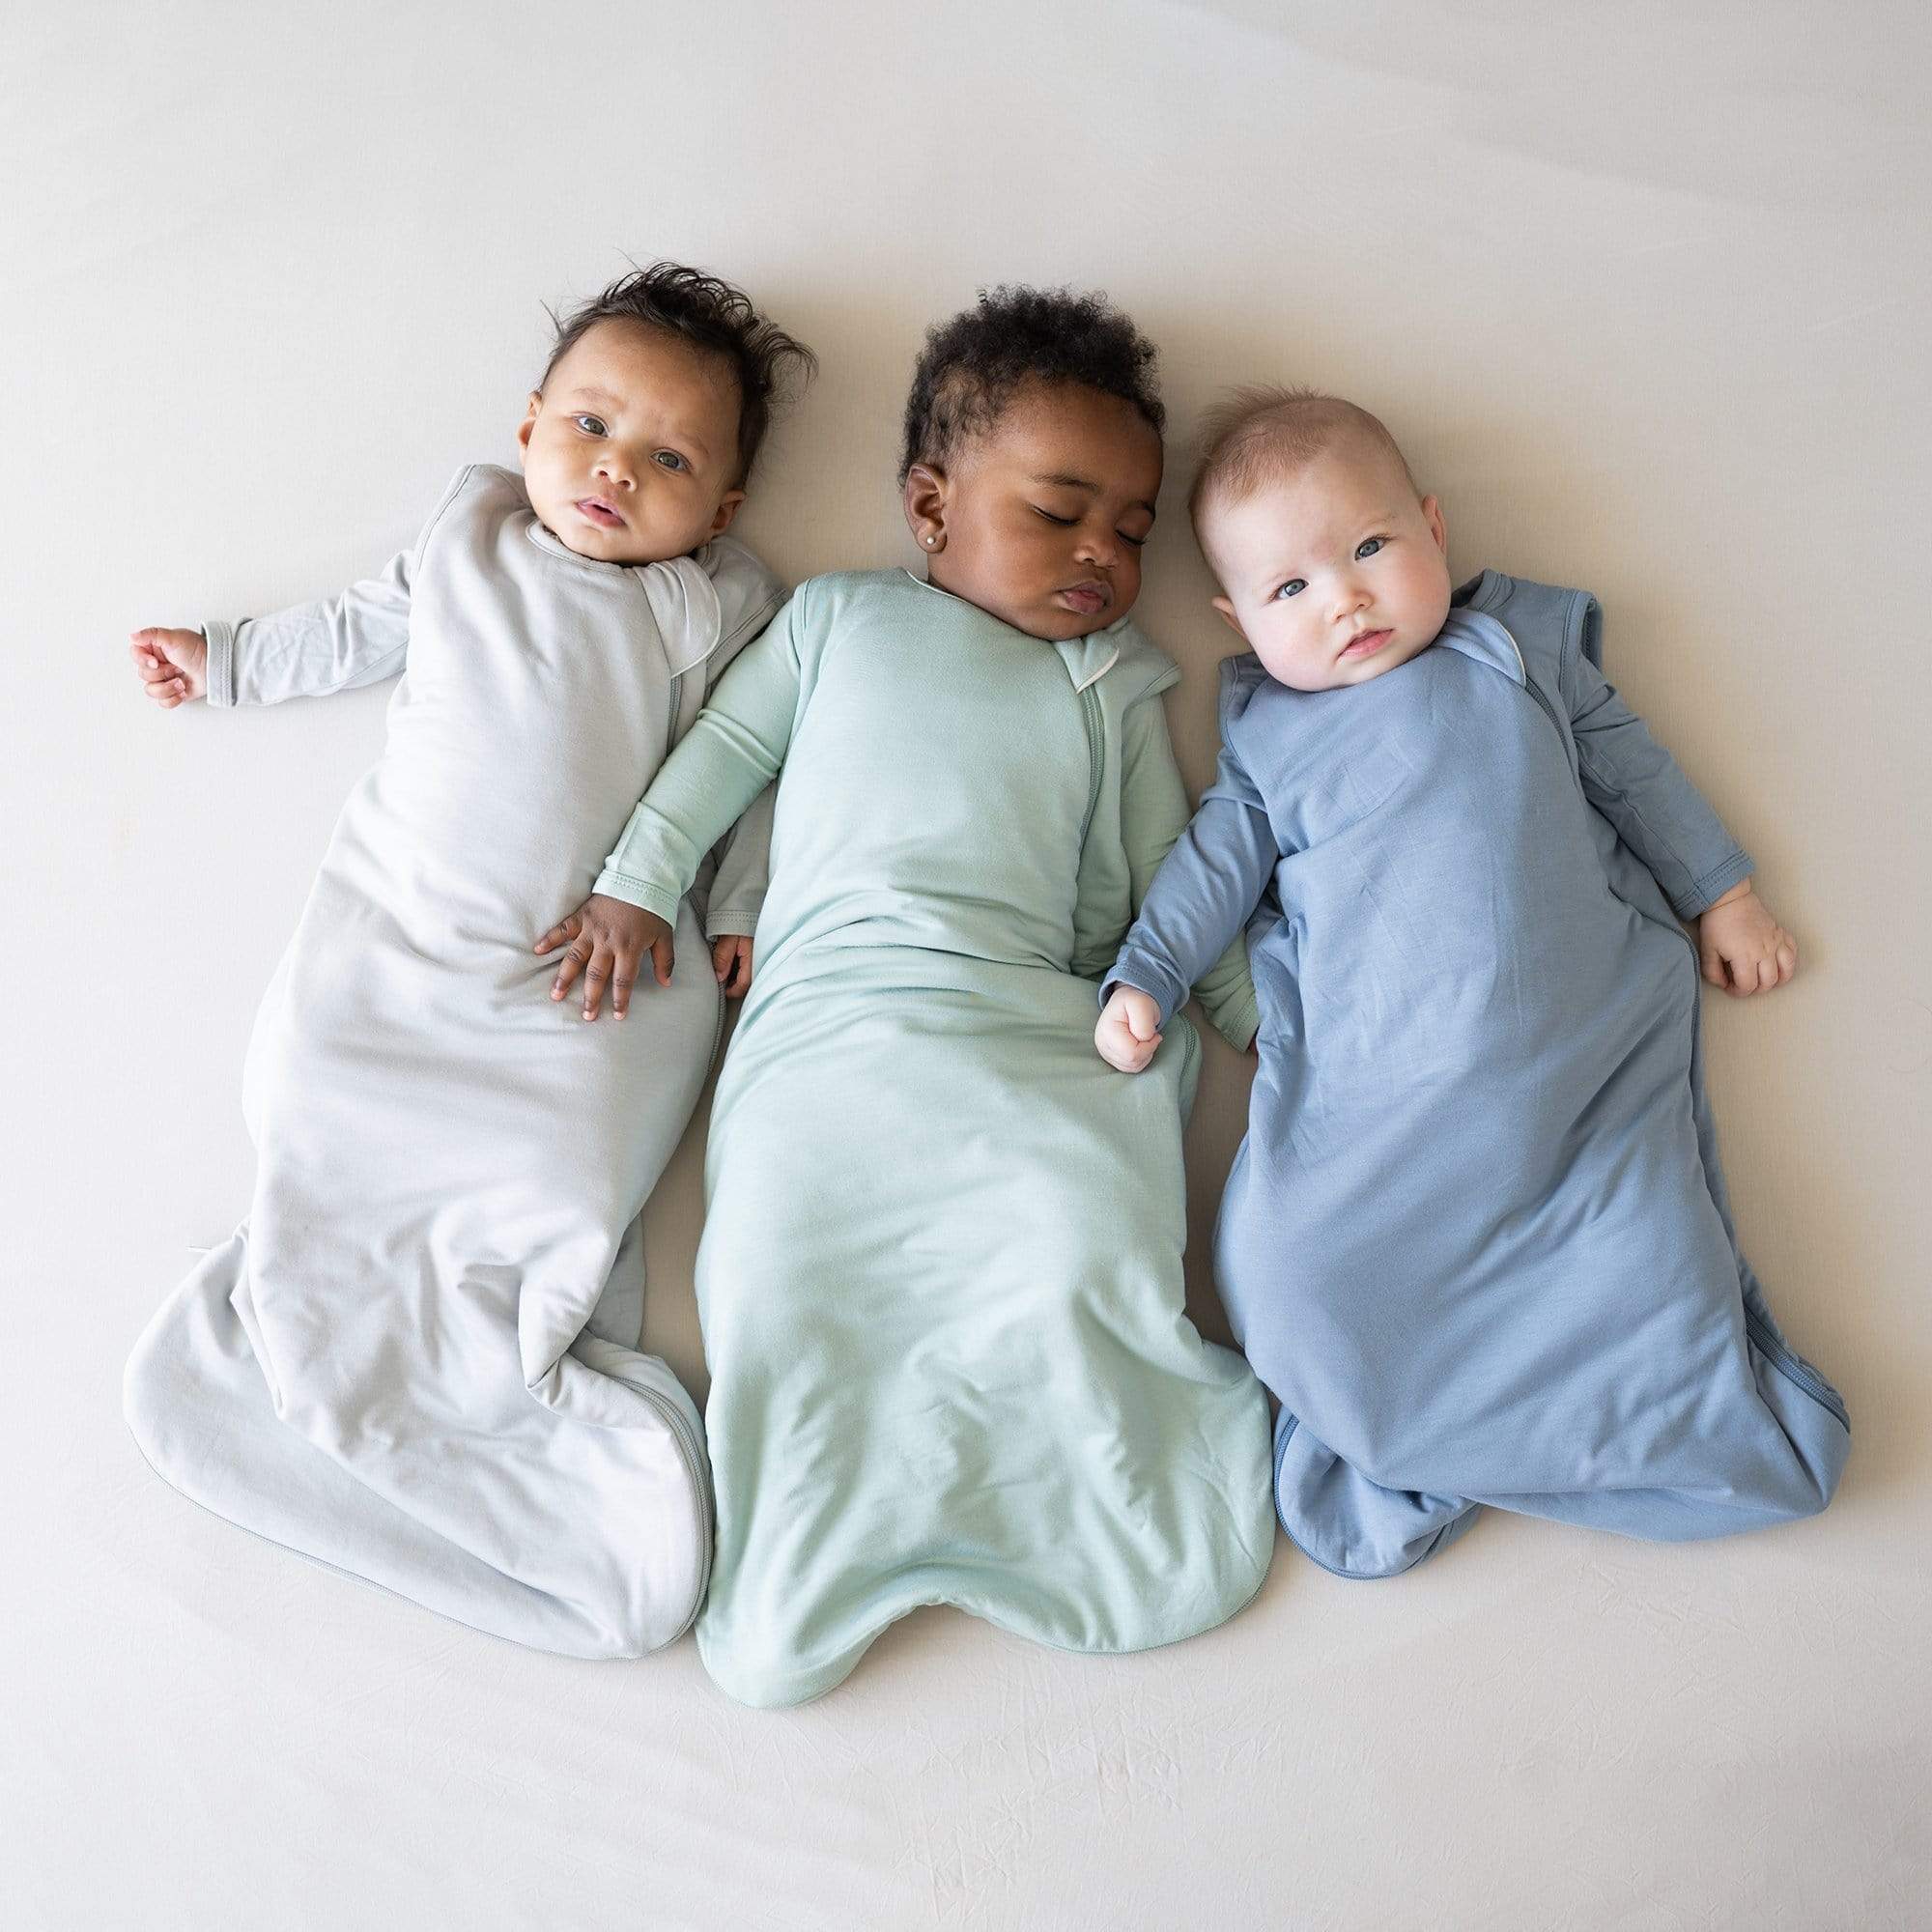 Babies wearing Kyte Baby sleep bags TOG 2.5 in core colors